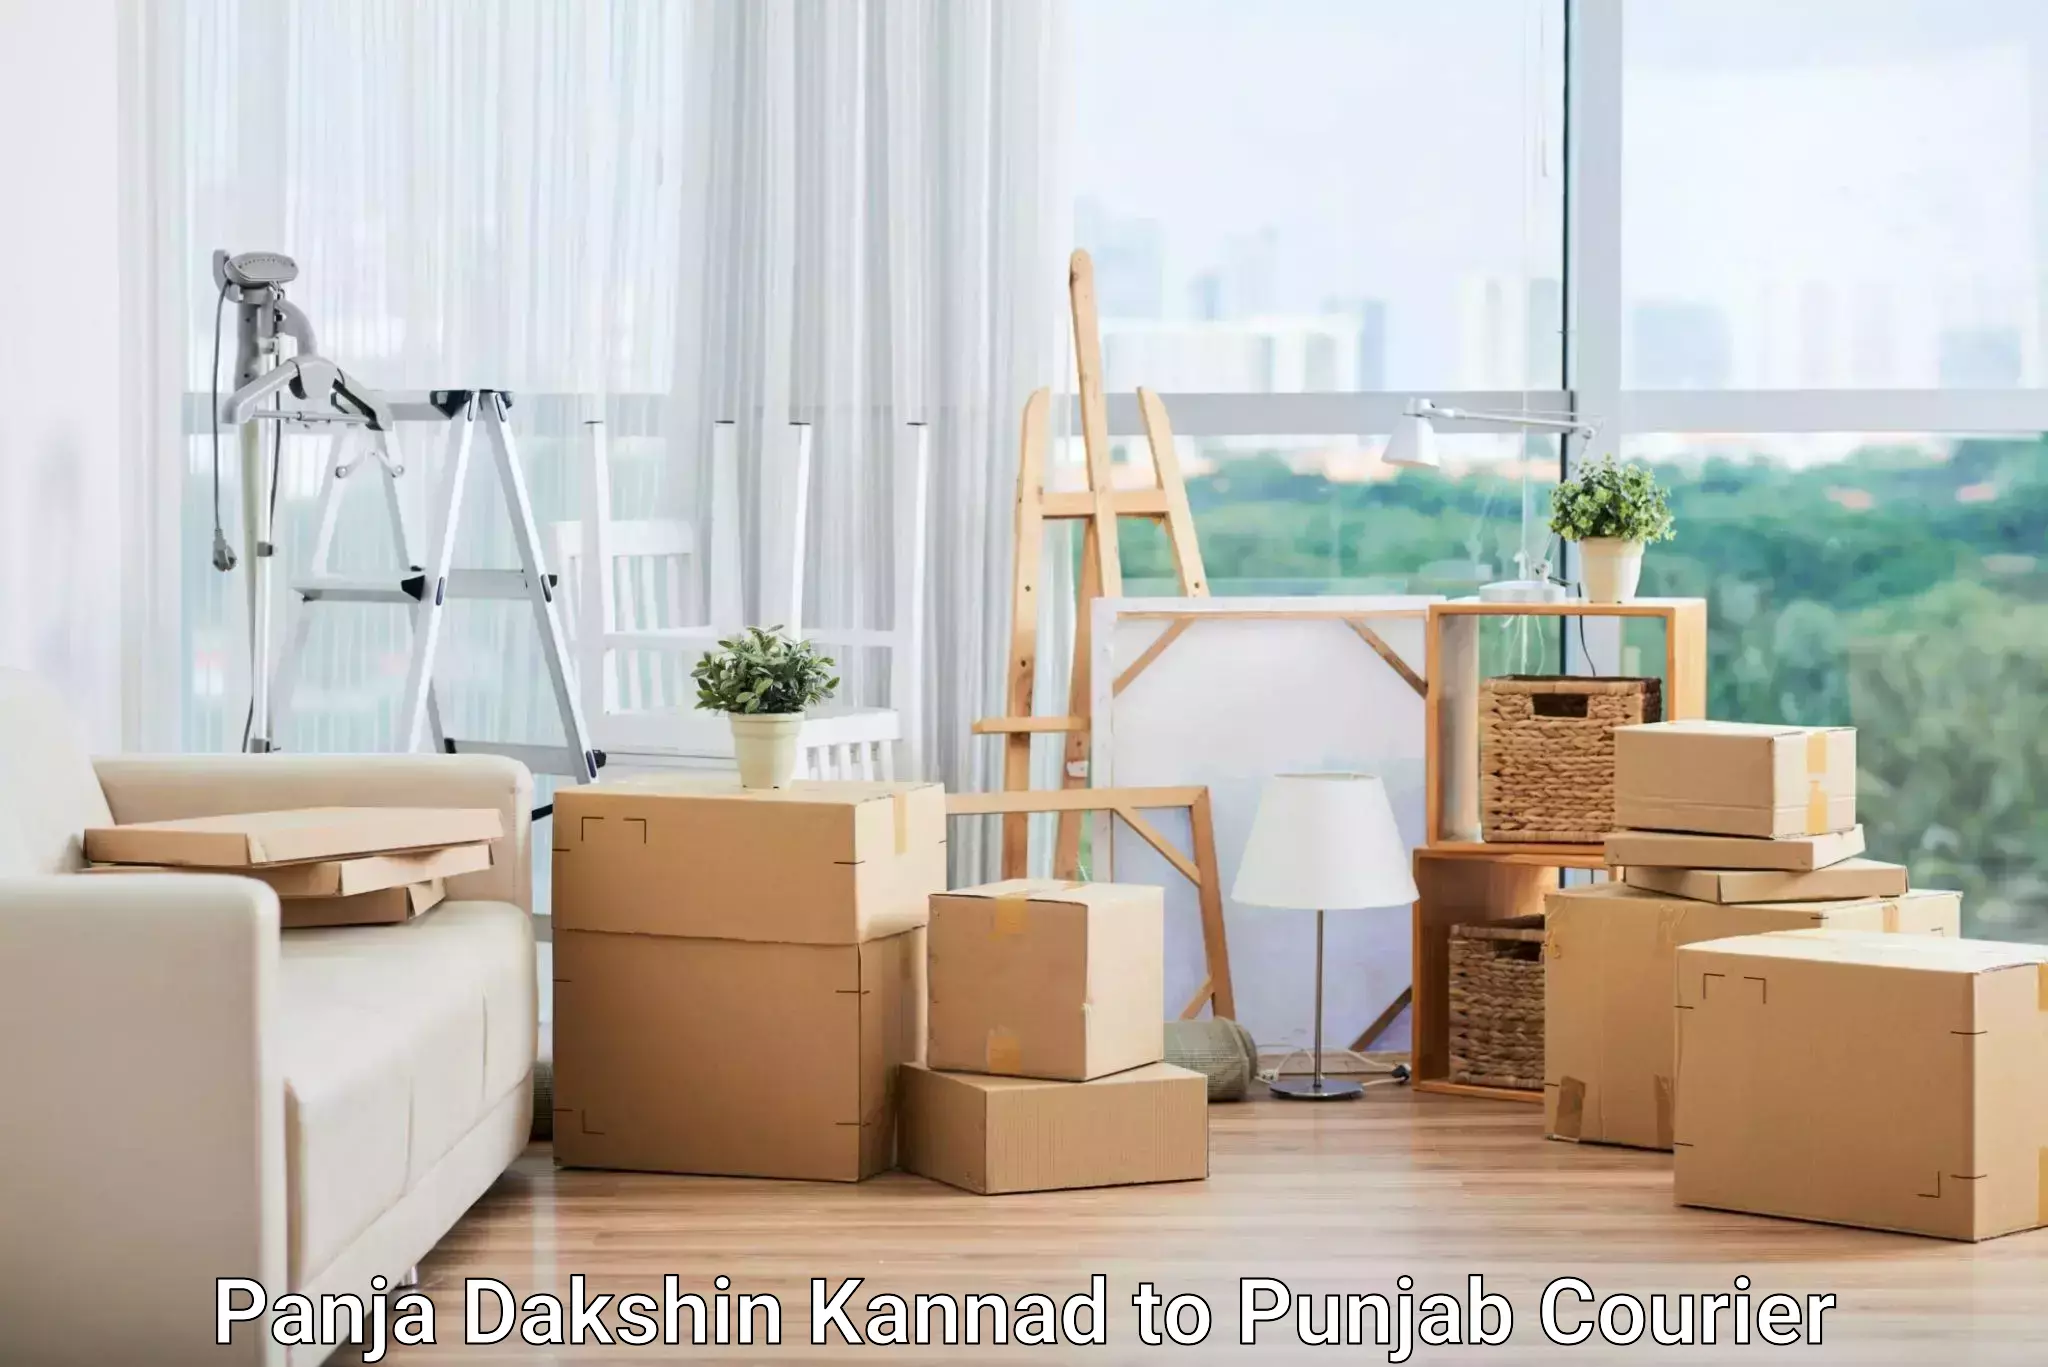 Large-scale shipping solutions Panja Dakshin Kannad to Jalandhar